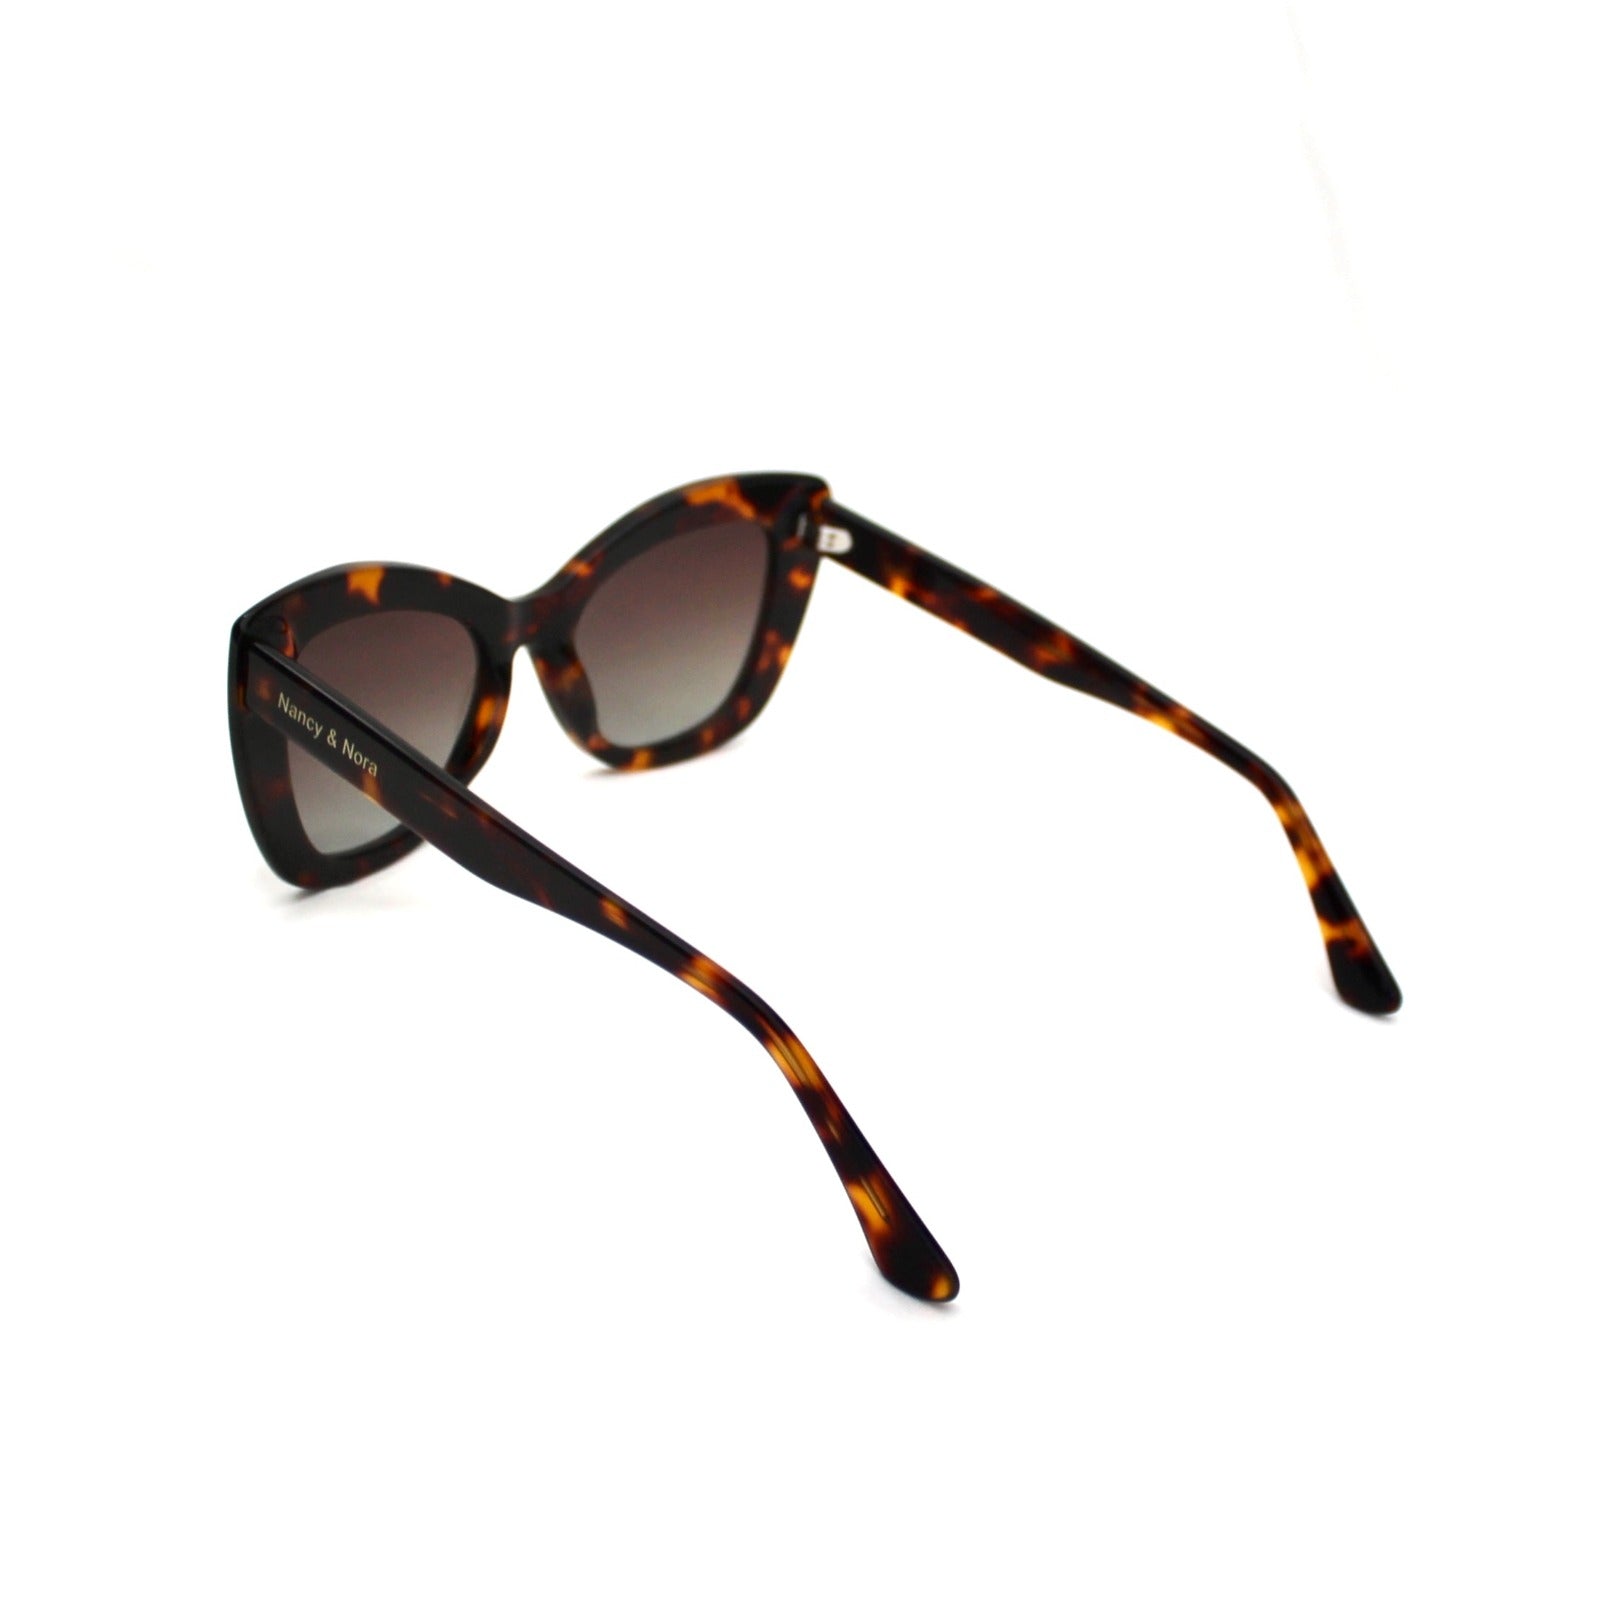 Capri Sunglasses Tortoiseshell